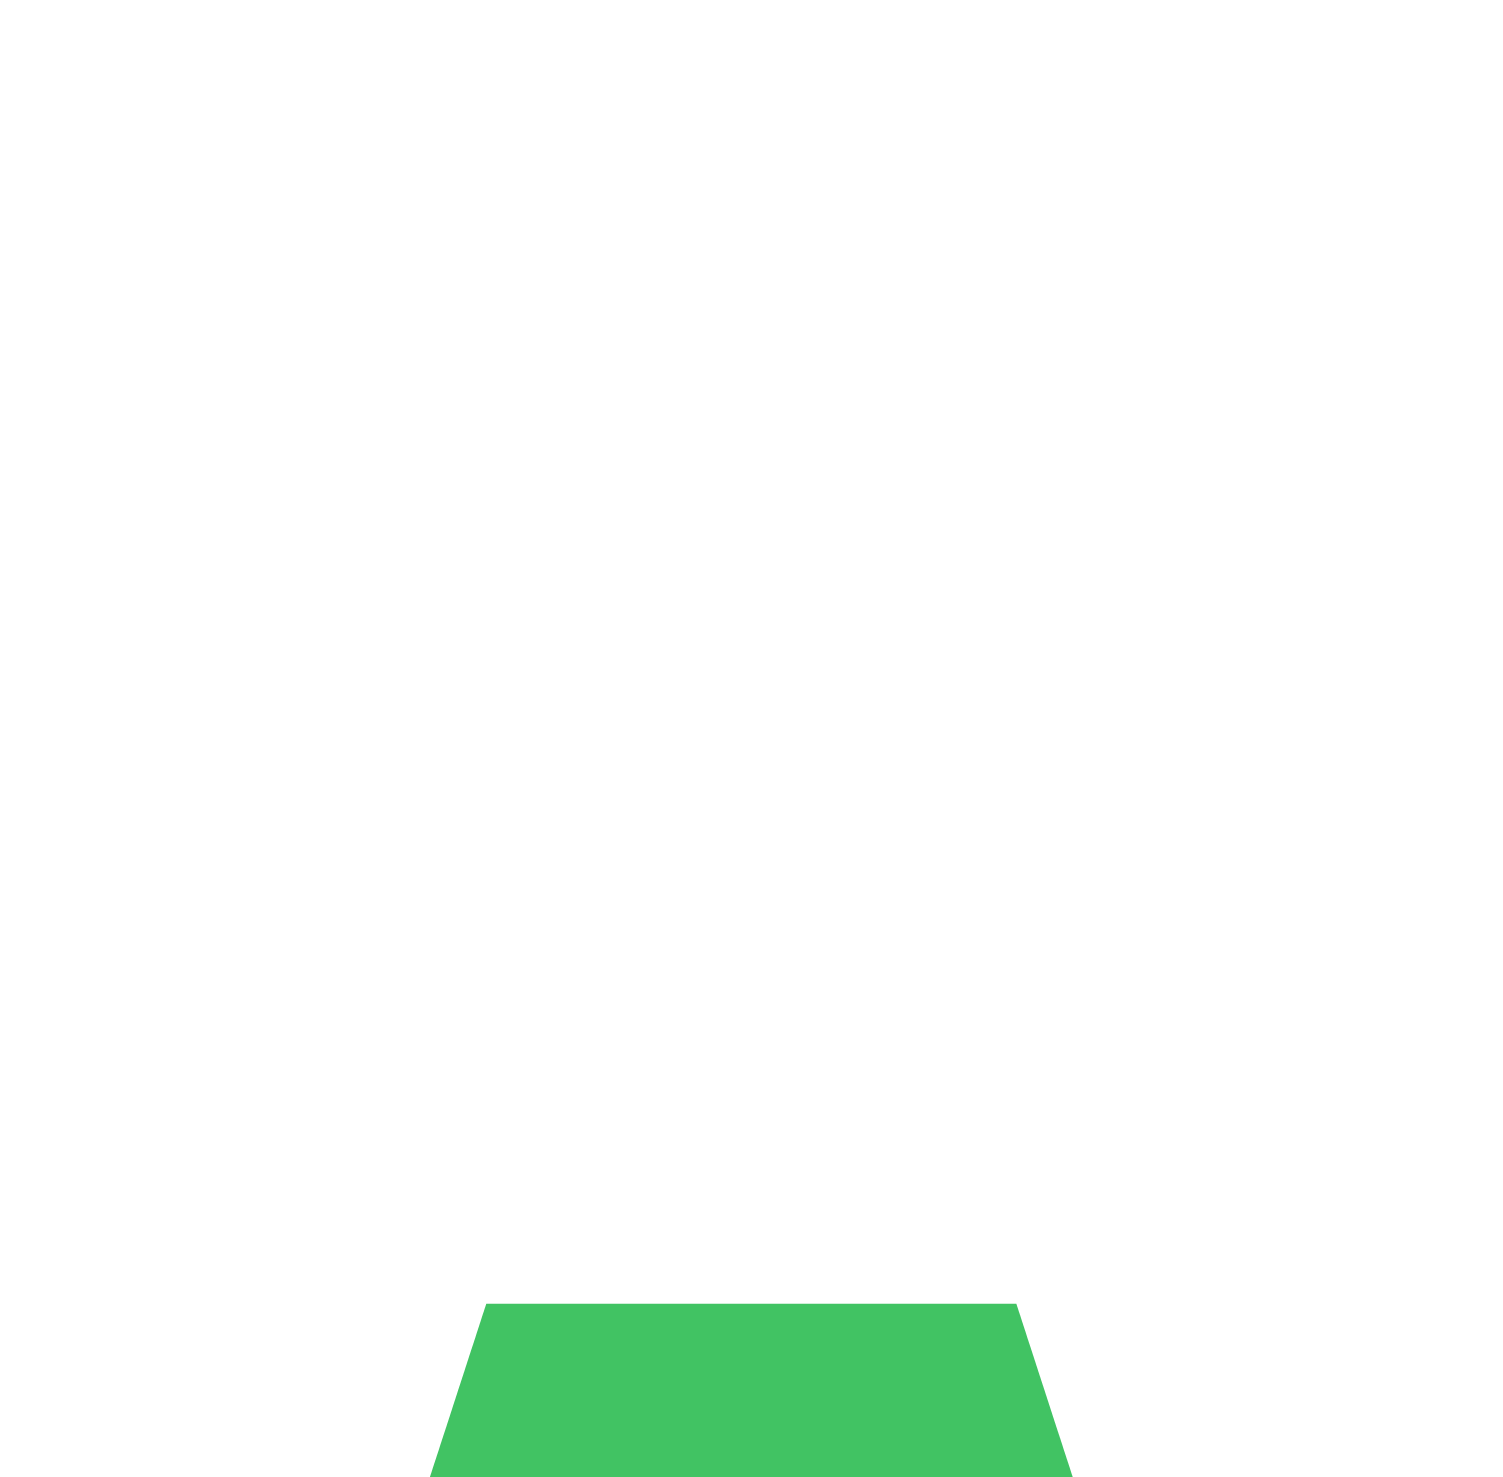 Avnet logo for dark backgrounds (transparent PNG)